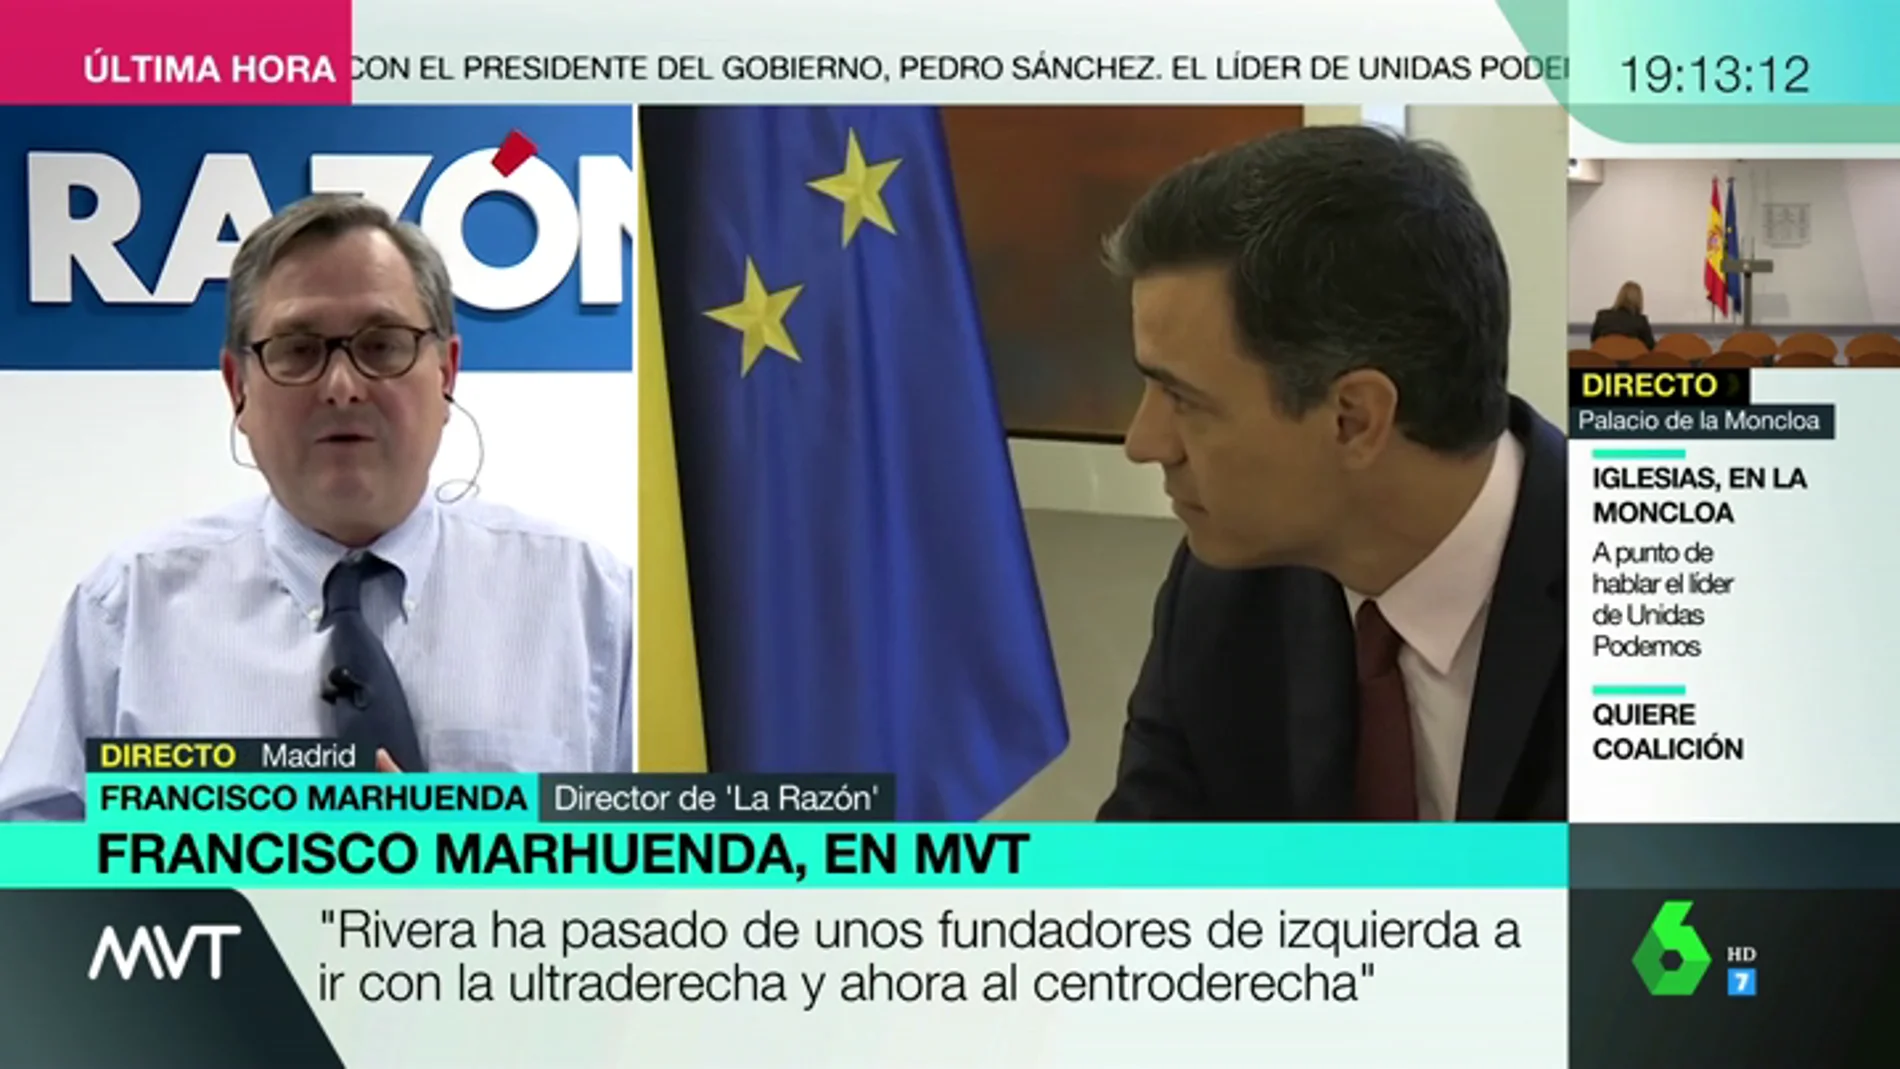 Los elogios de Francisco Marhuenda a Pedro Sánchez: "Es un líder político con mucho cuajo, con fuerza política y con capacidad de liderazgo"